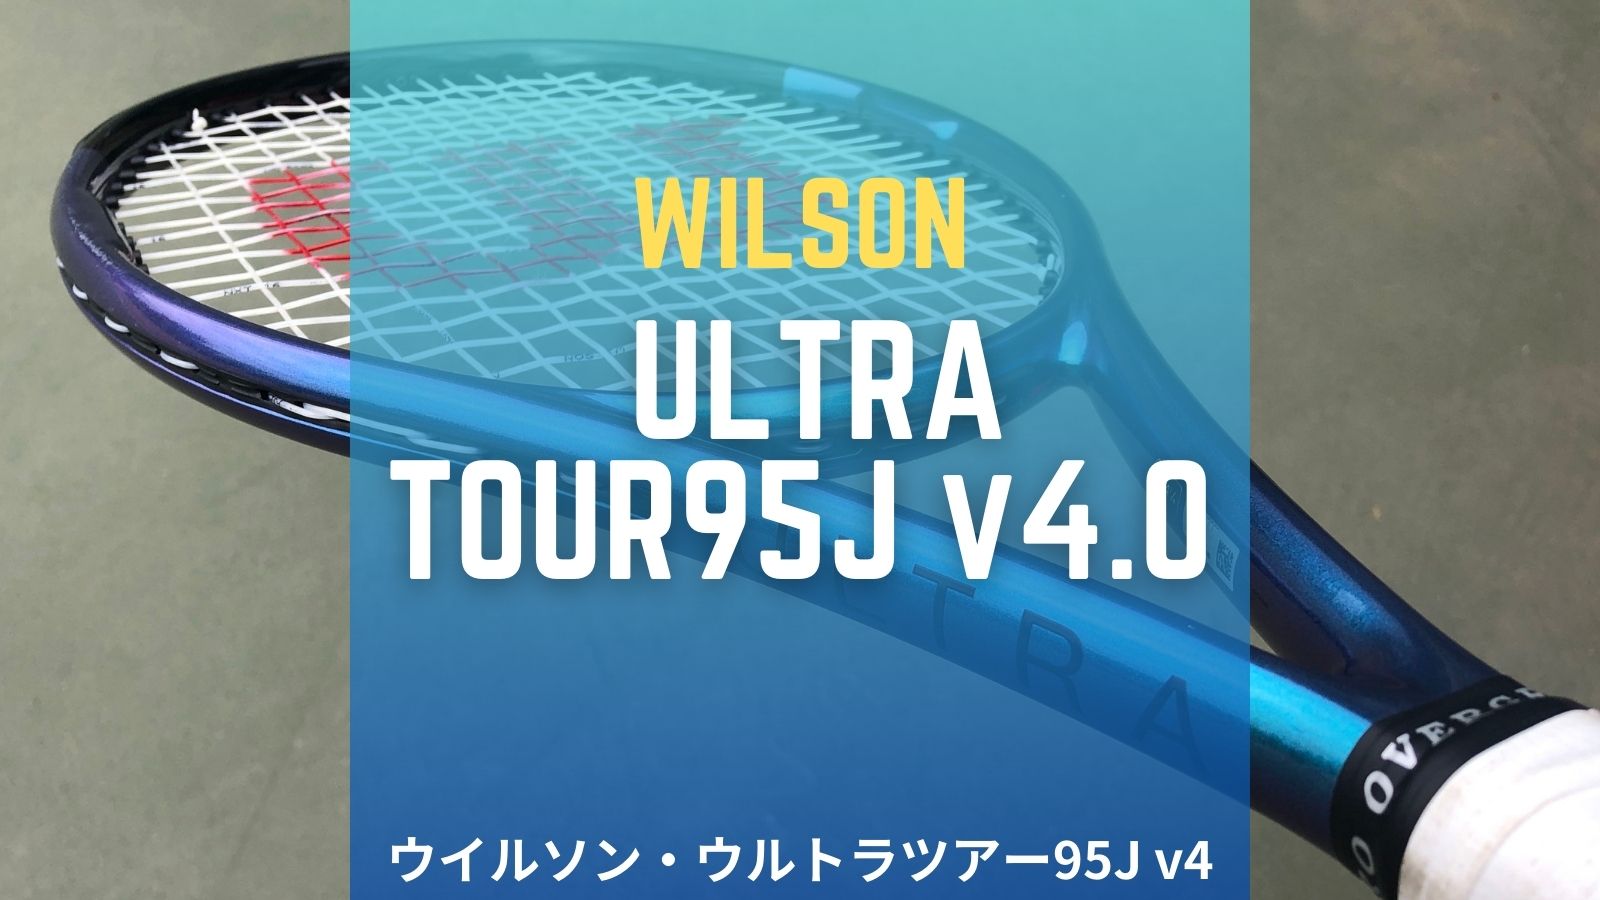 Wilson ULTRA TOUR  95J  V4.0   G2